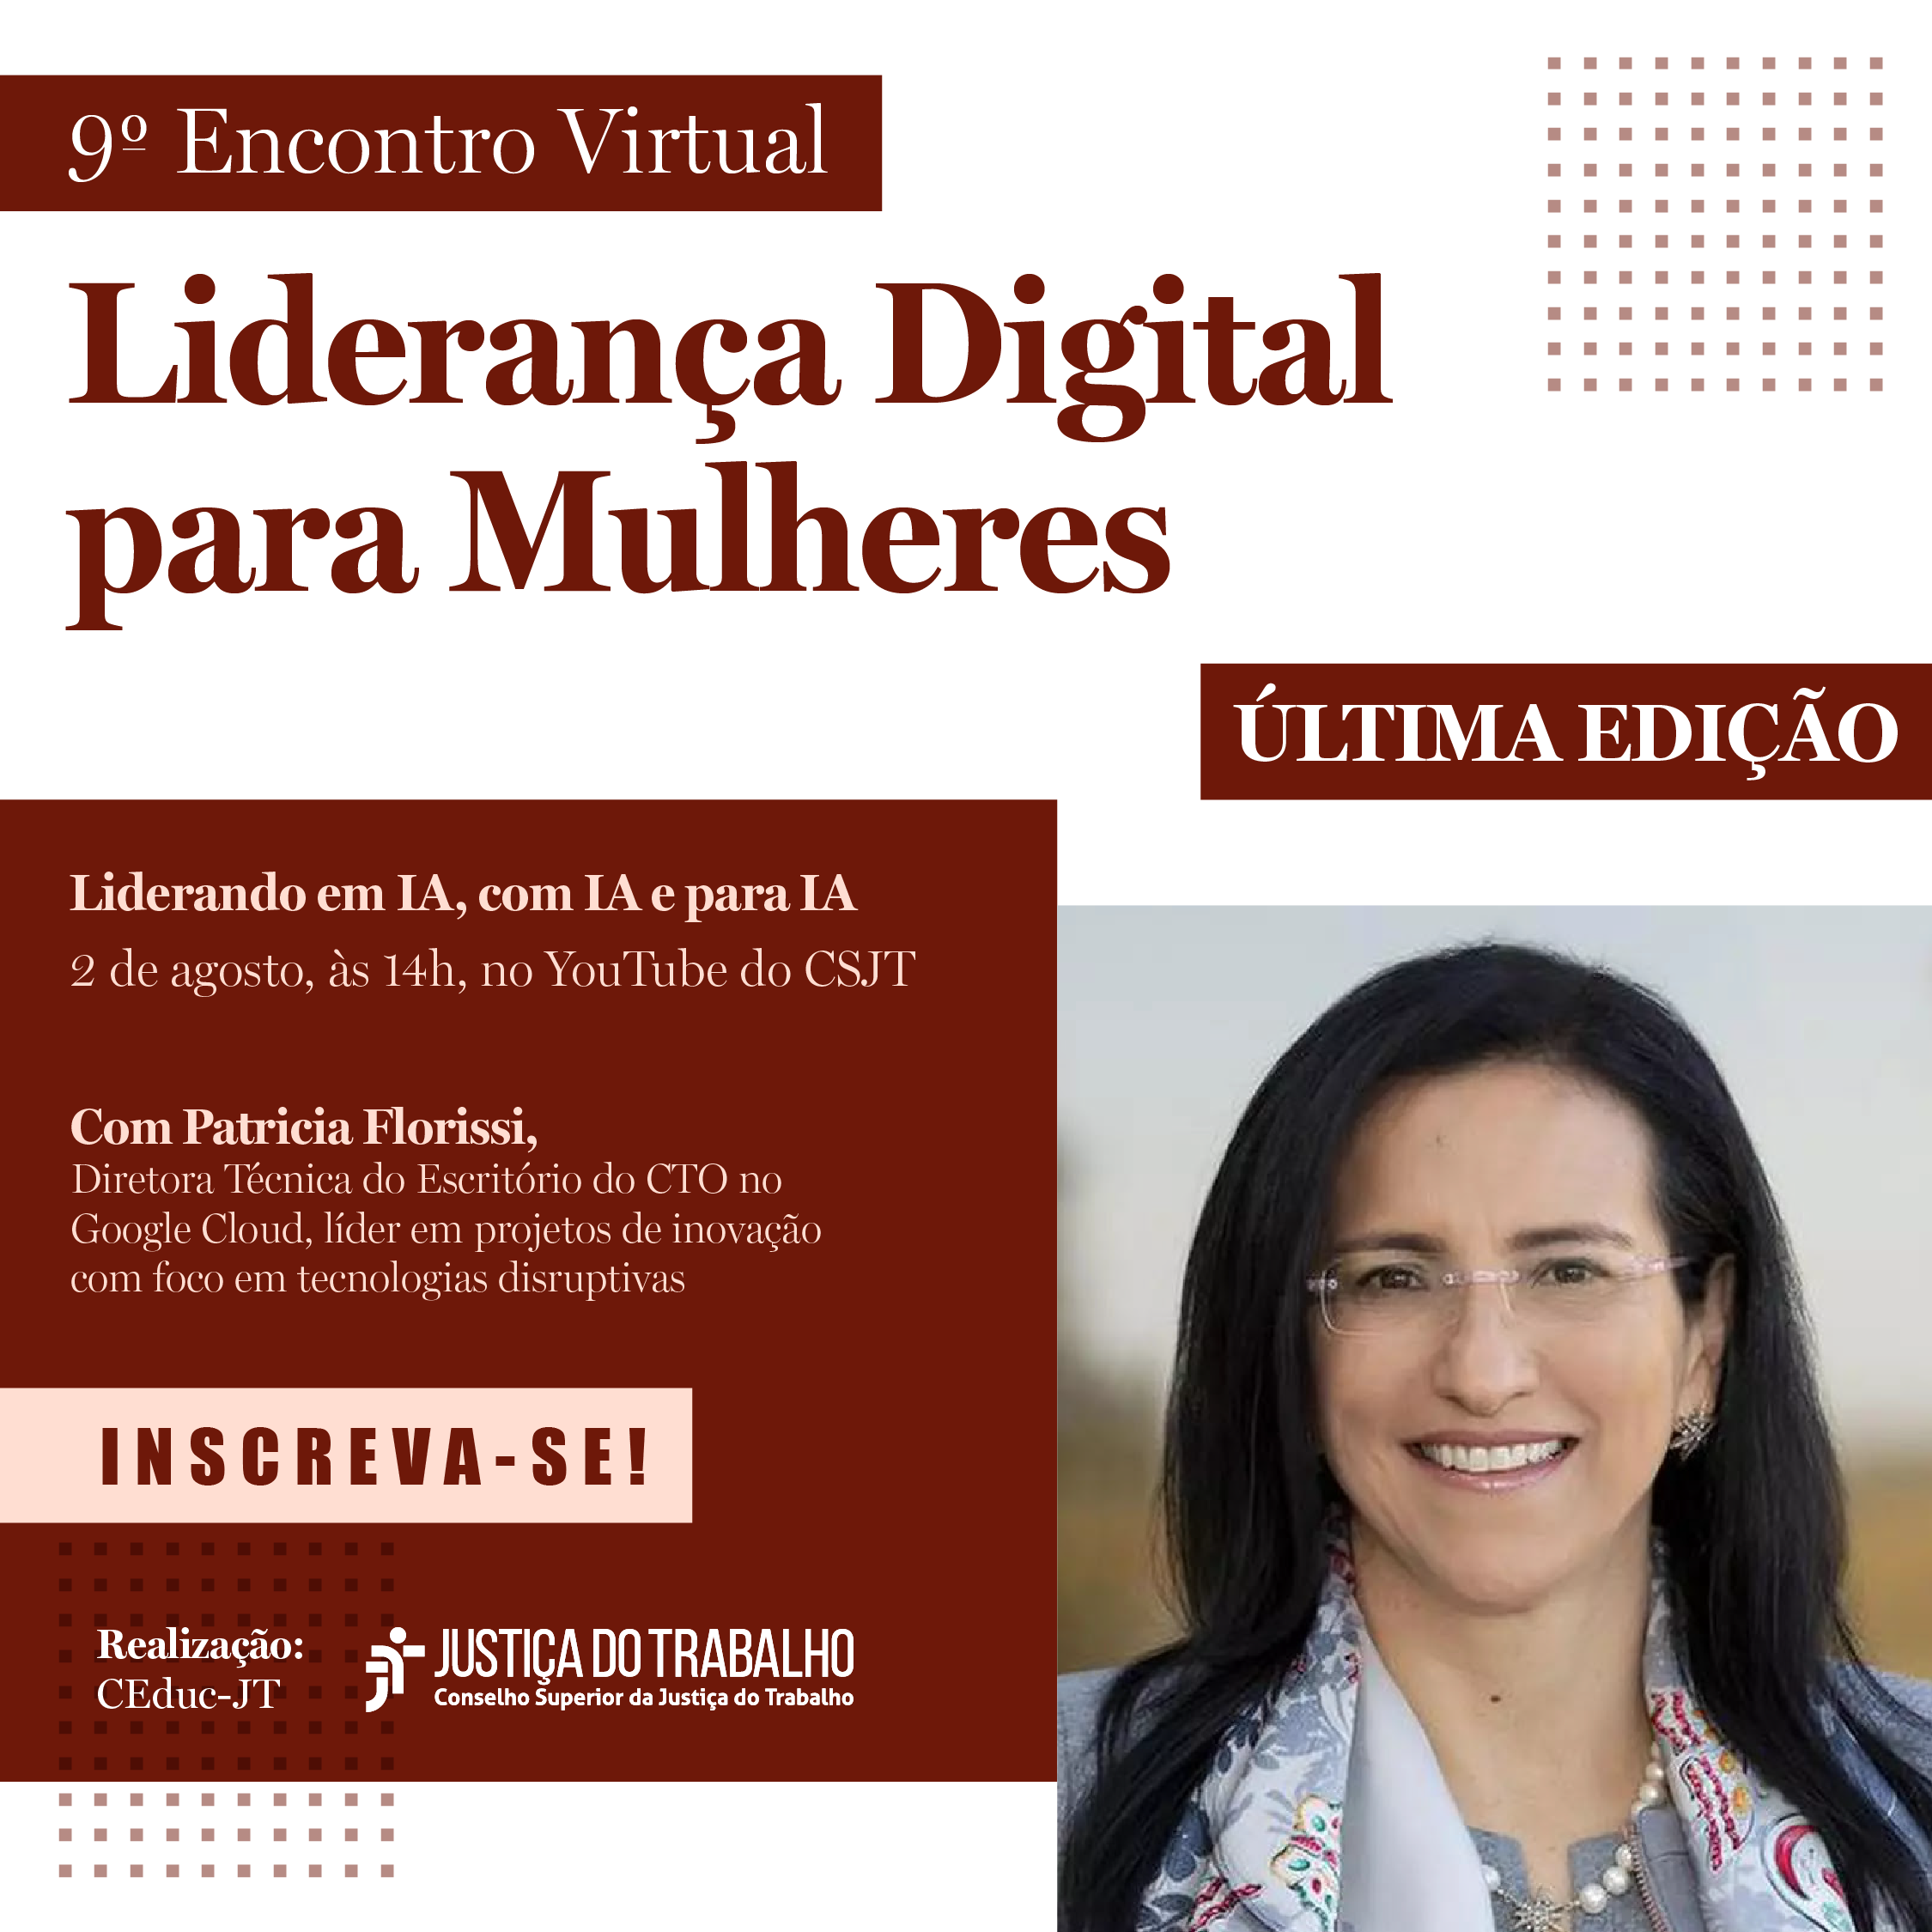 Poster de divulgação do 9º encontro virtual Liderança Digital para mulheres. O banner apresenta a foto da palestrante uma mulher de cabelos compridos que usa óculos.